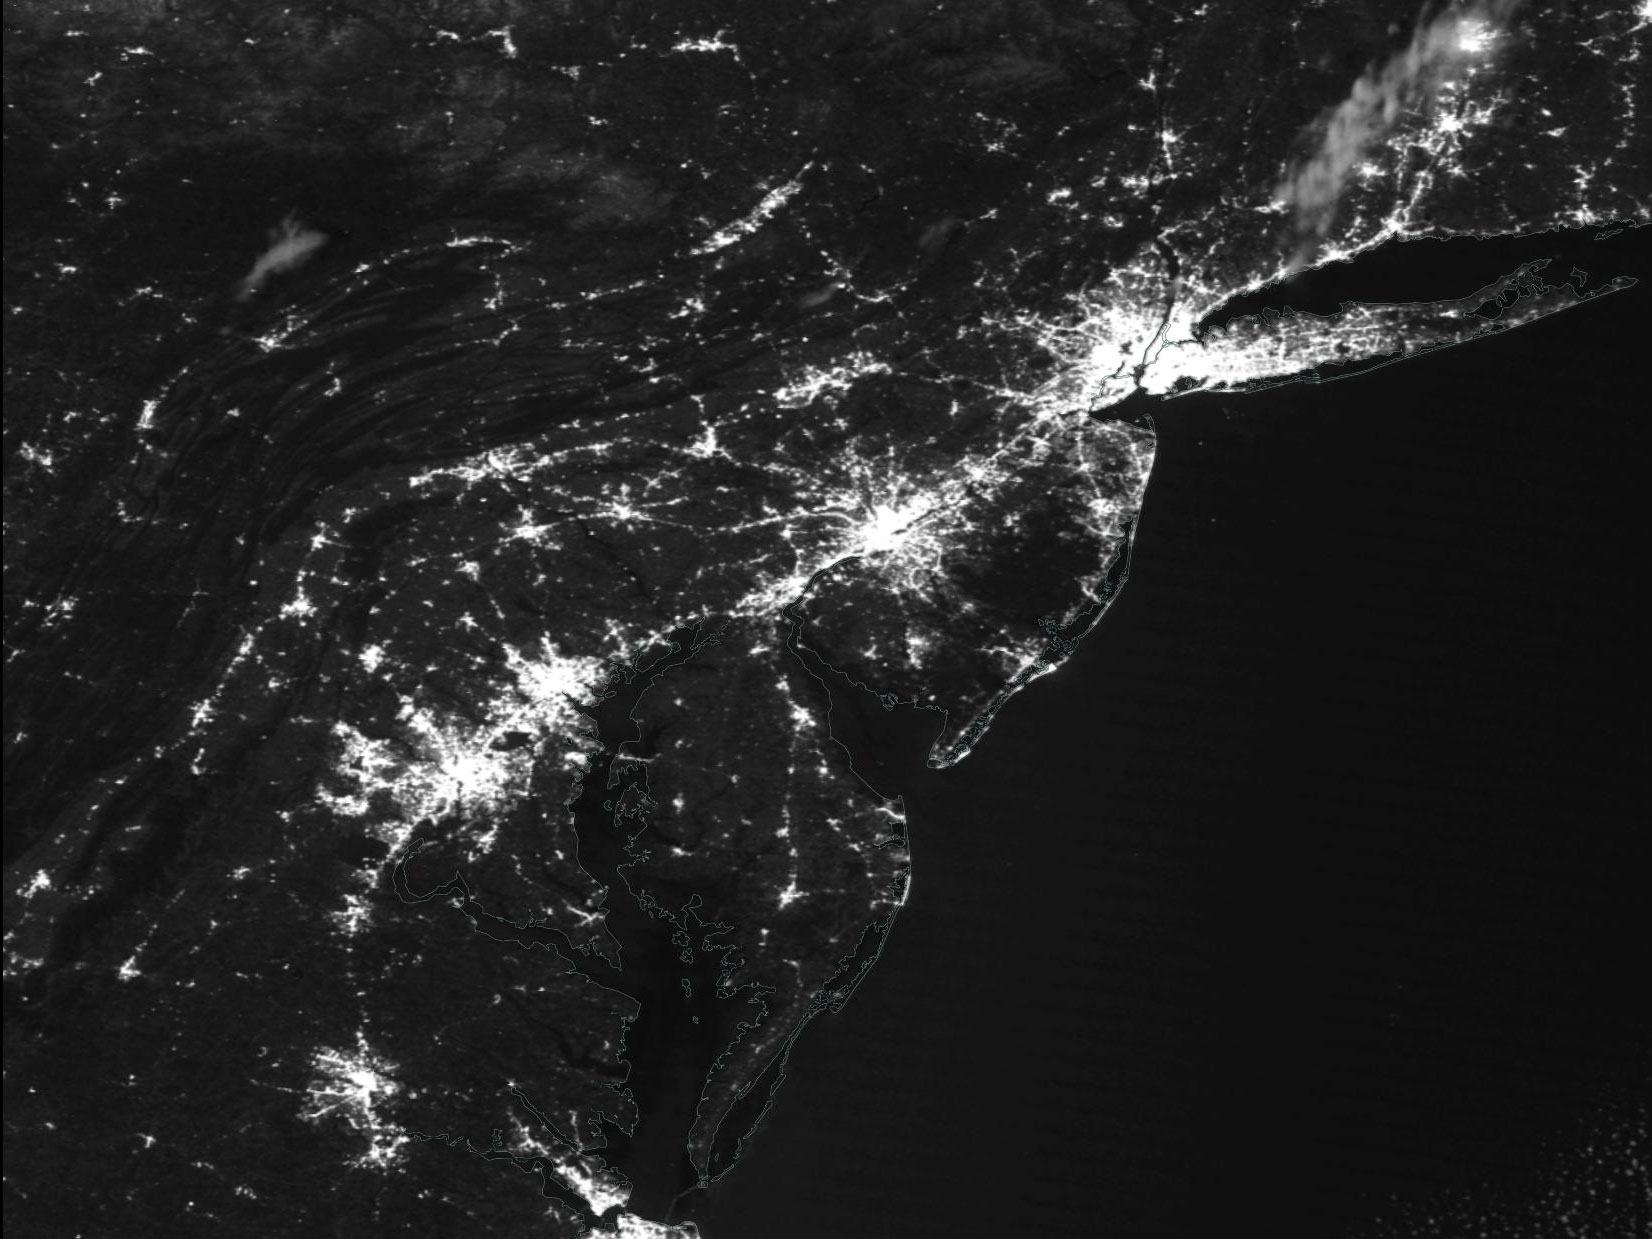 US East Coast at Night on 9 April 2020